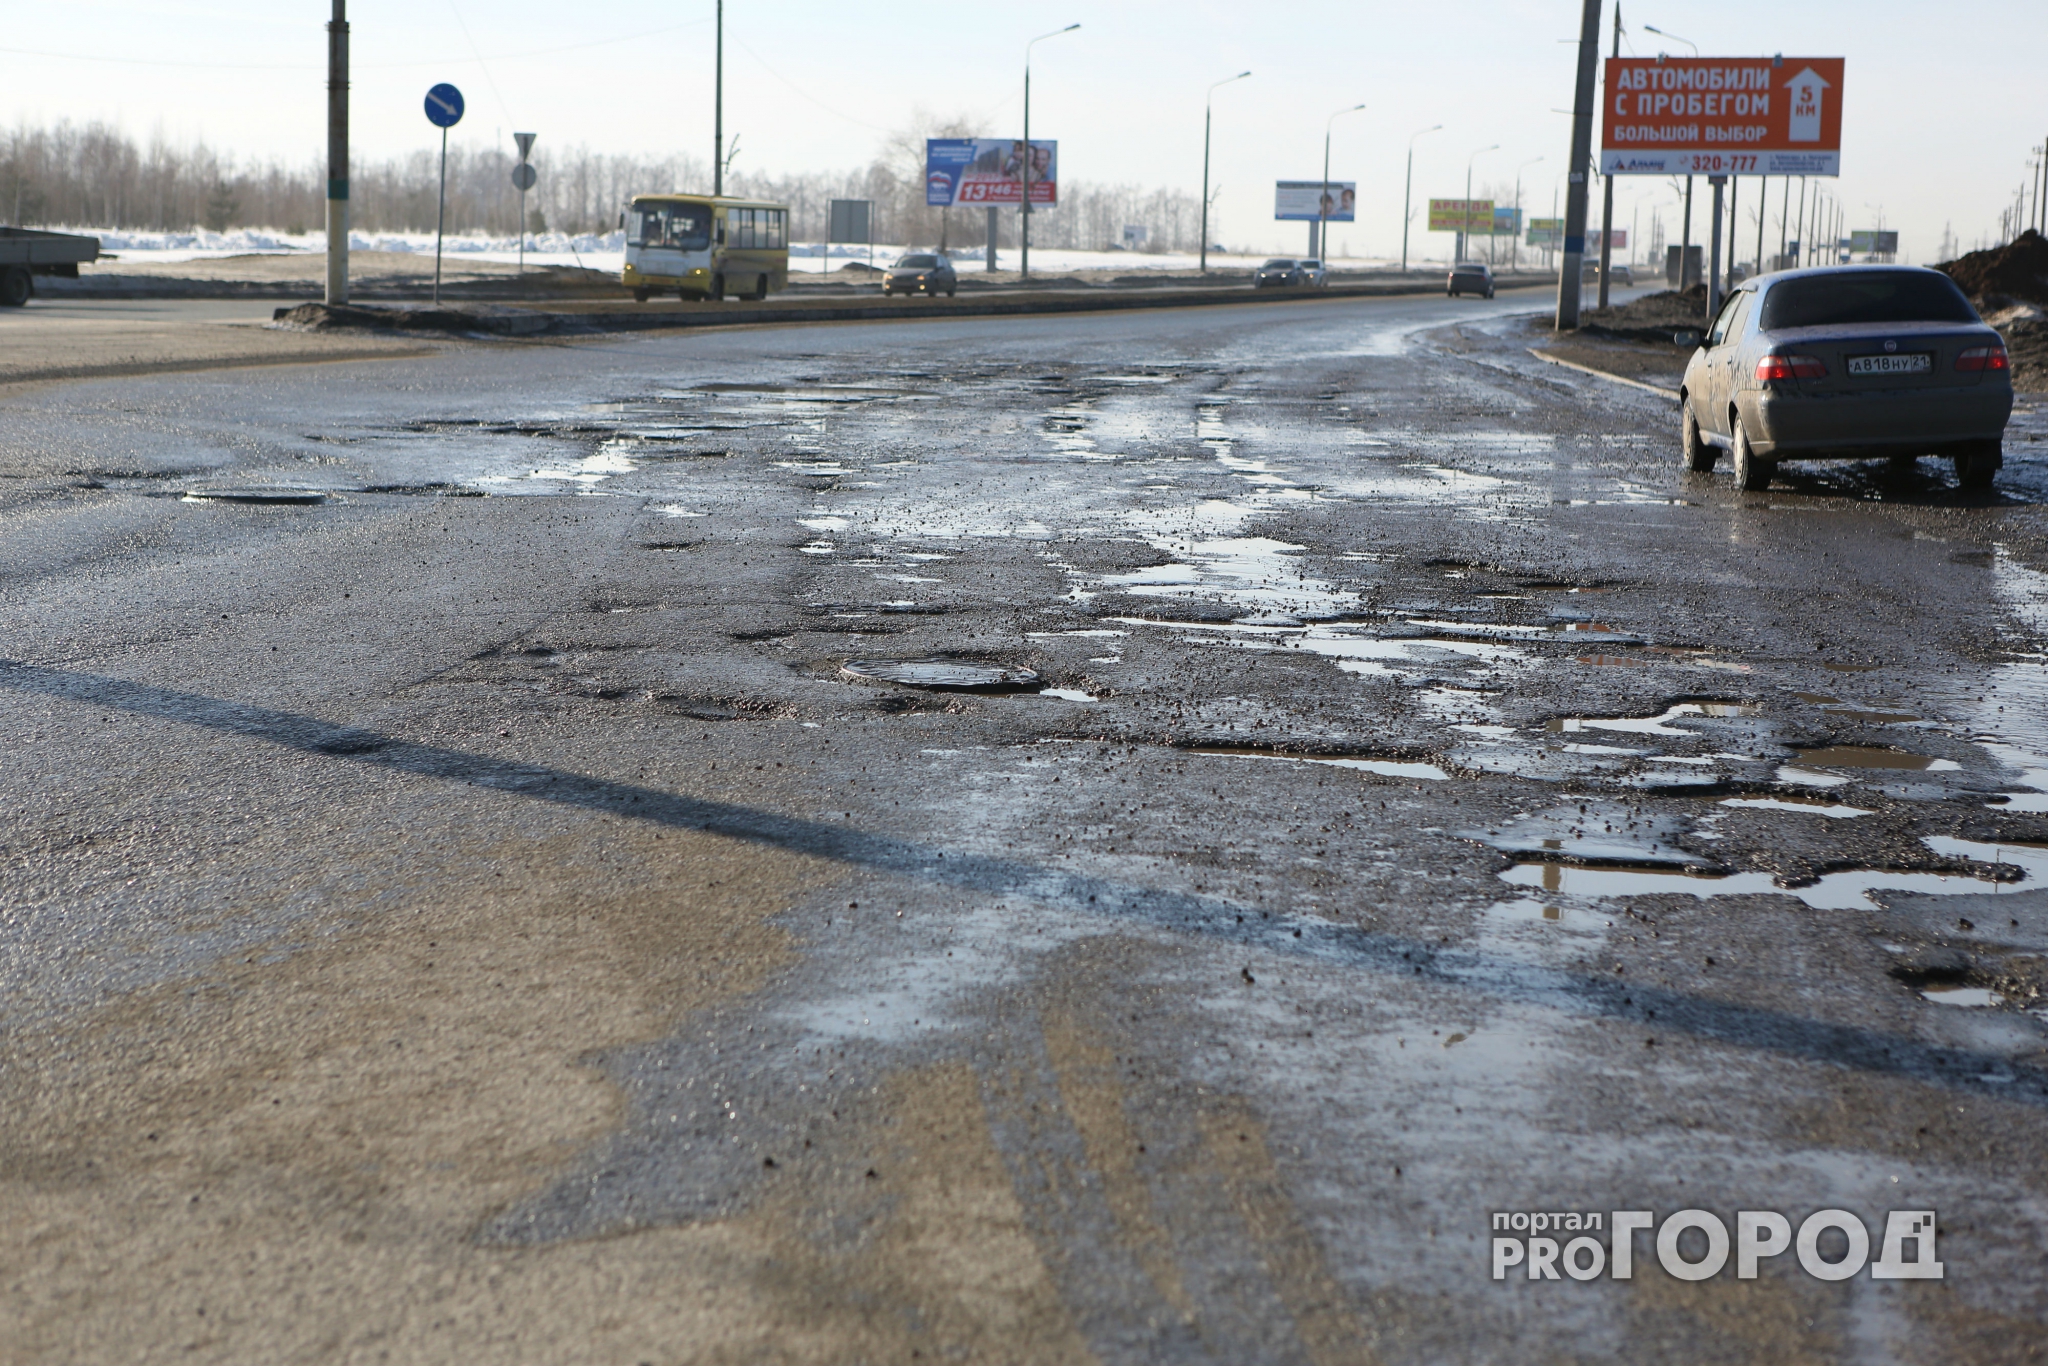 В субботу, 18 марта, в Рязани состоится автопробег против плохих дорог